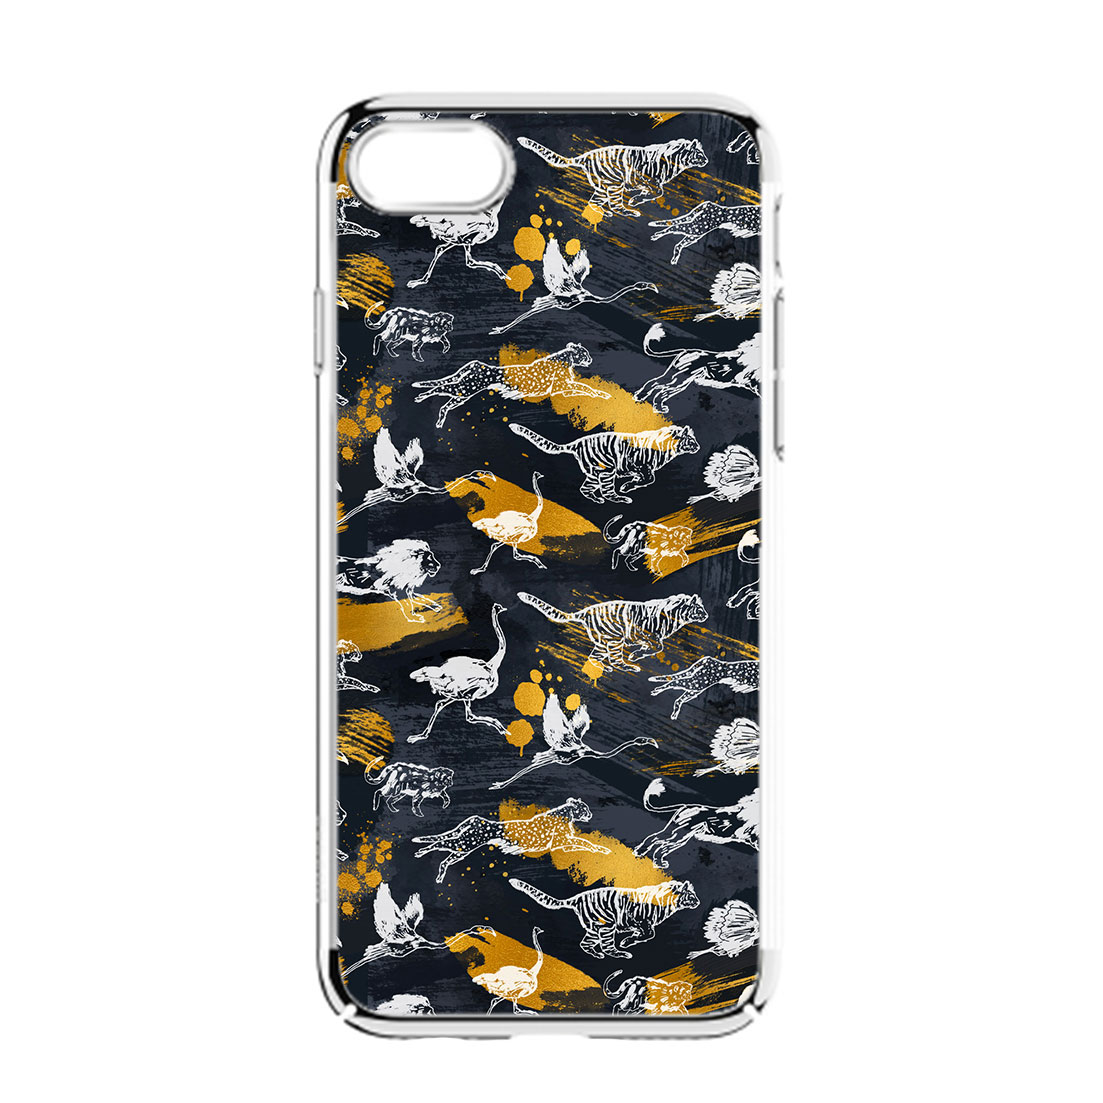 wild-animal-runners-phone-case-